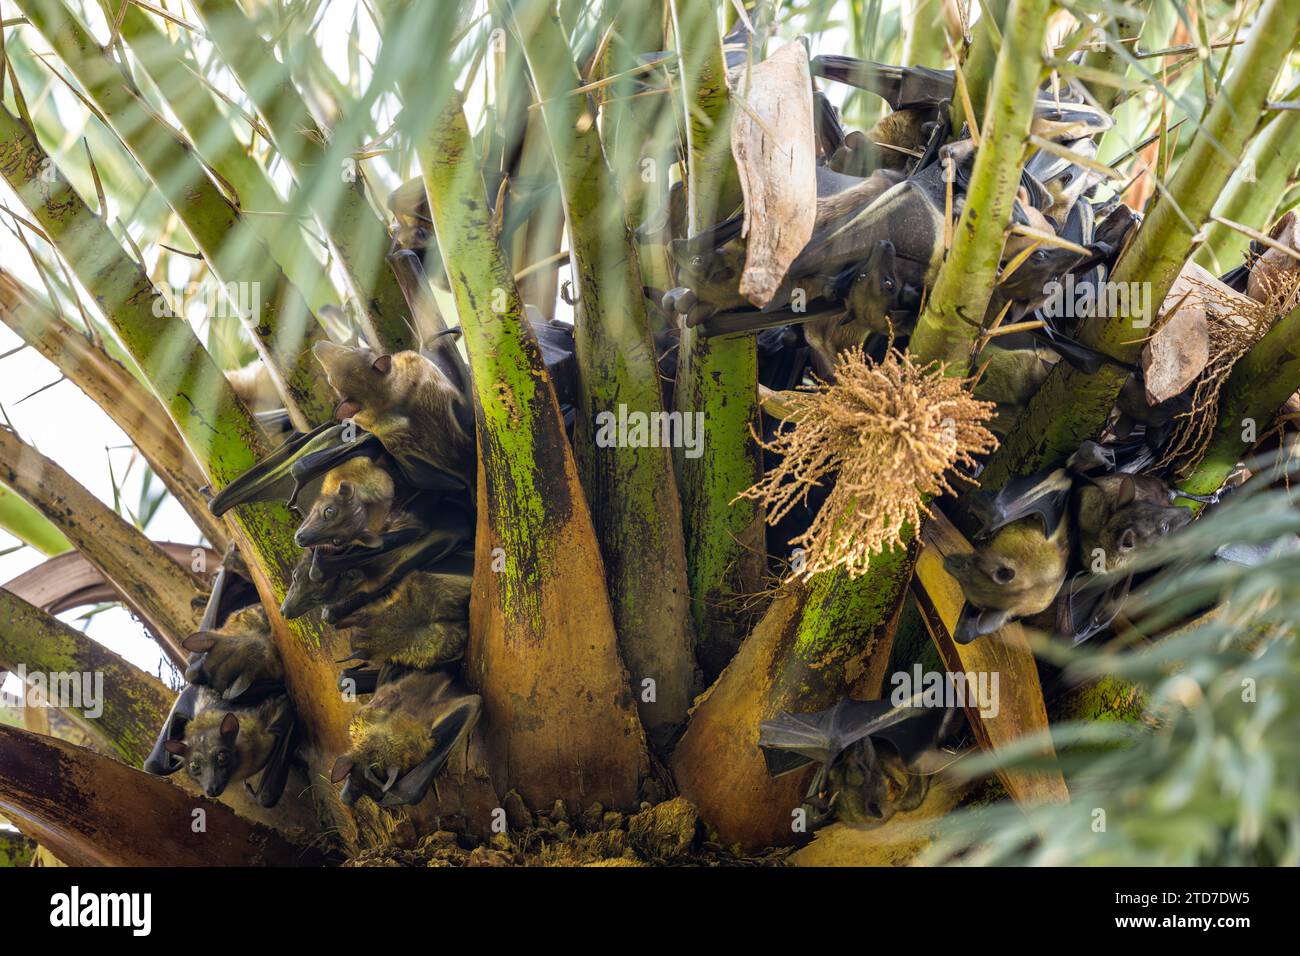 Strohfarbene Obstfledermaus, Eidolon helvum. Eine riesige Kolonie von Fledermäusen auf einer Palme. Stockfoto